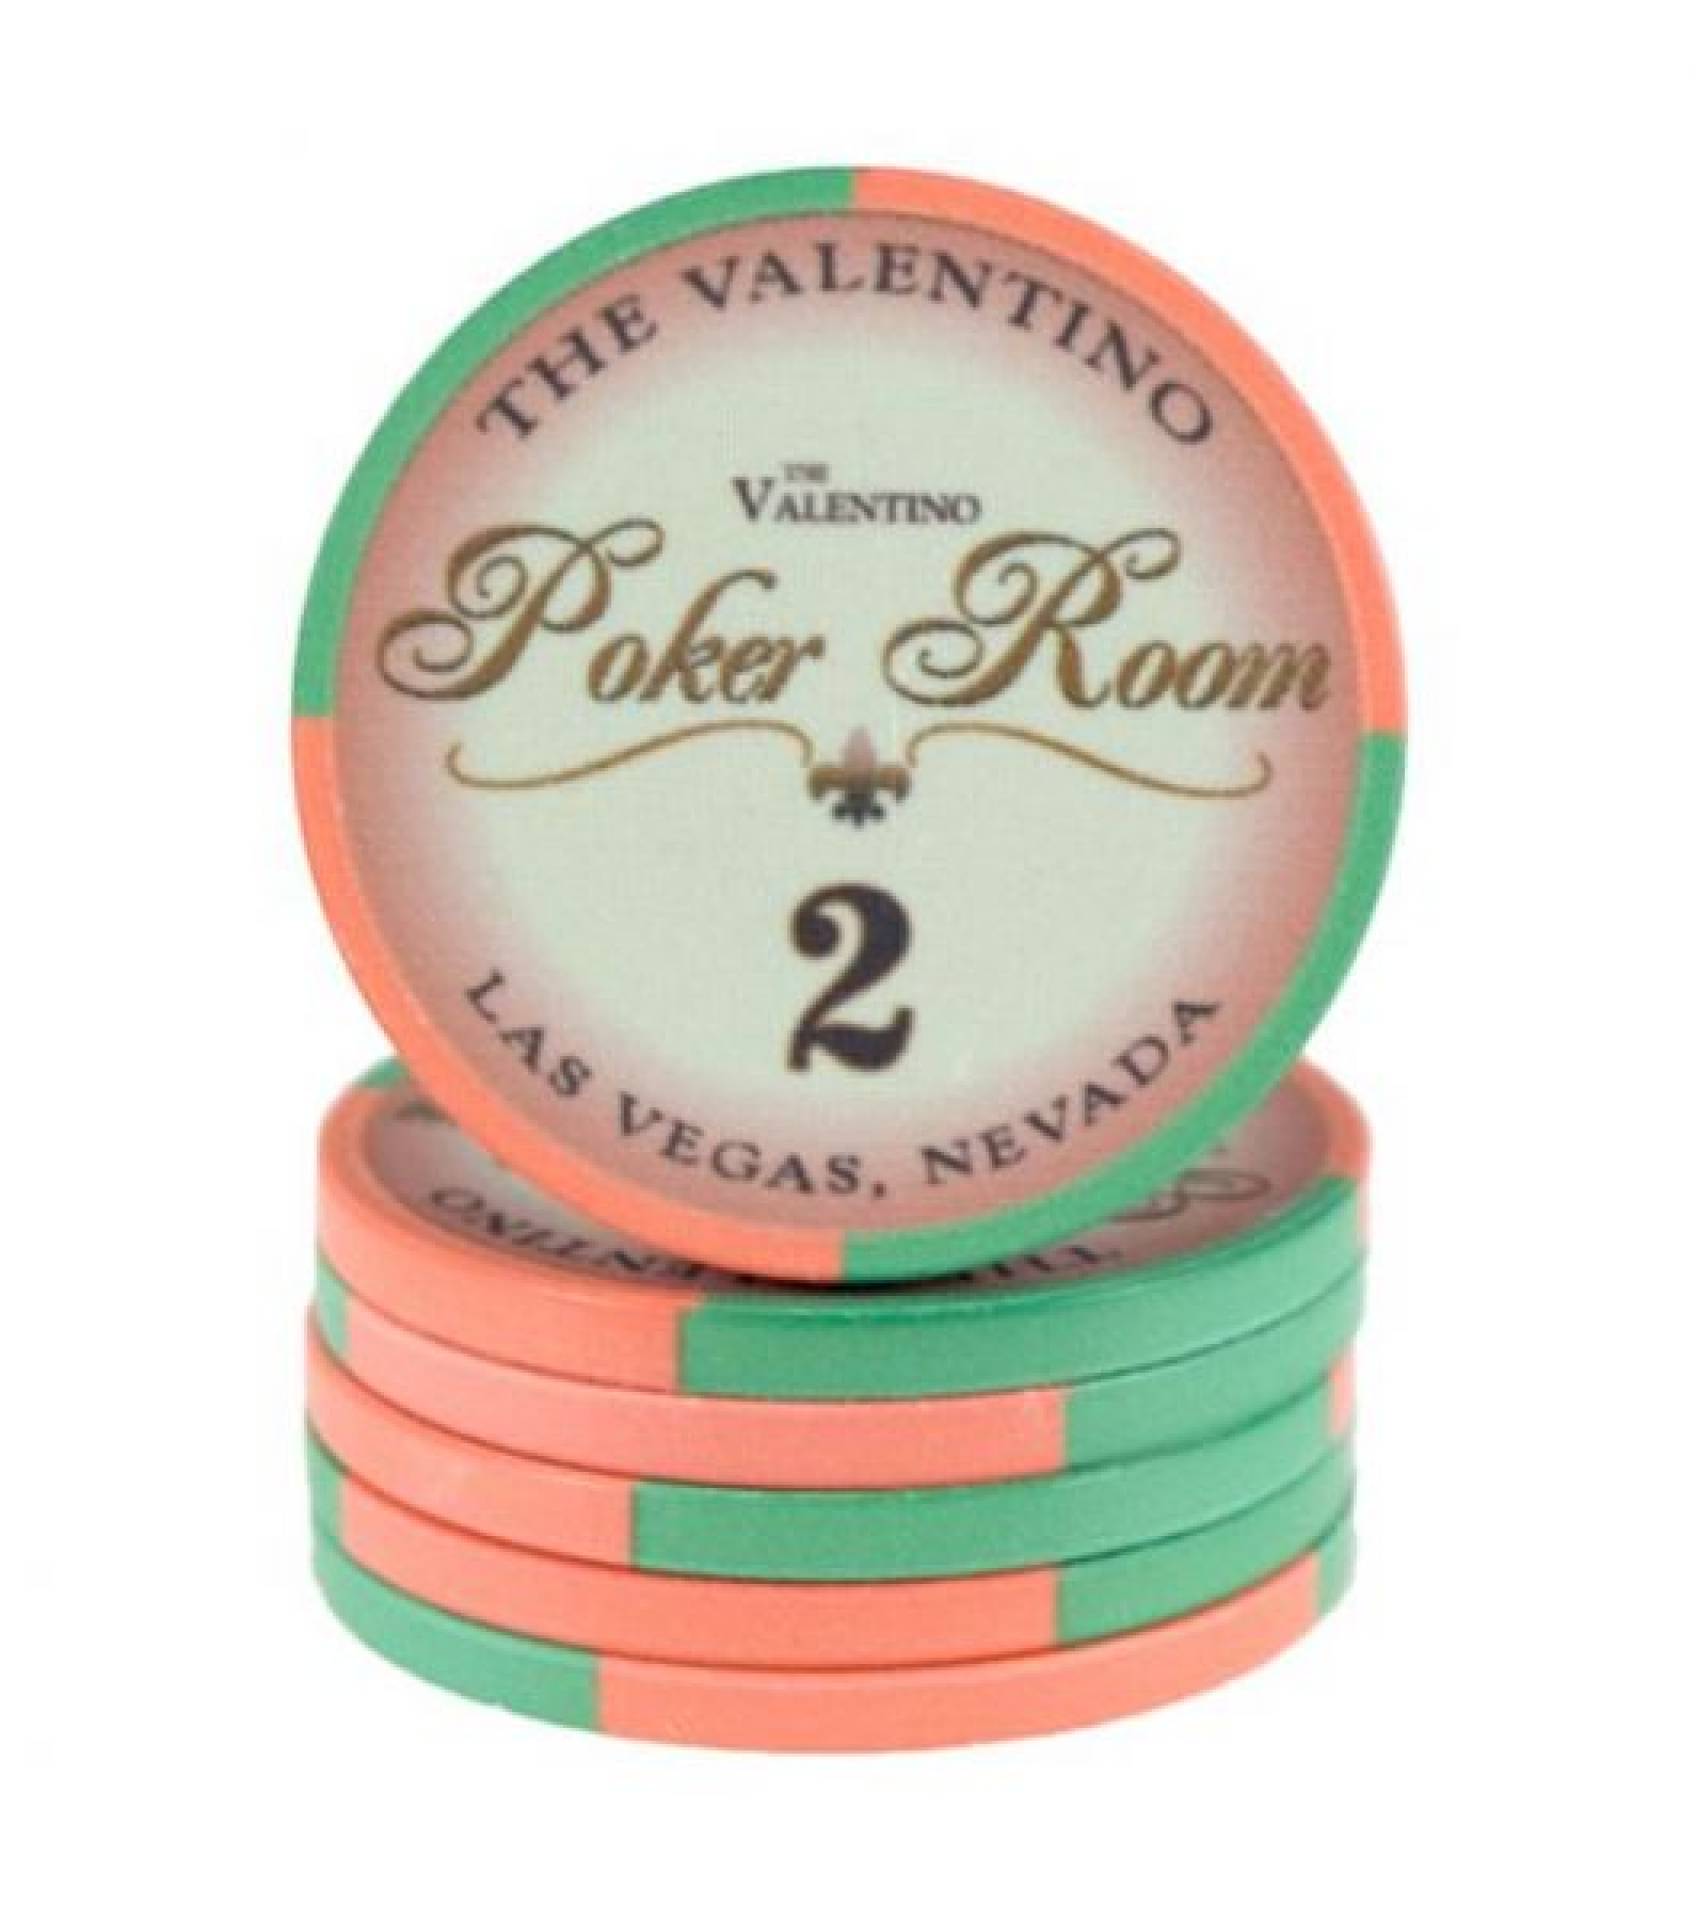 Poker chip Valentino - hodnota 2